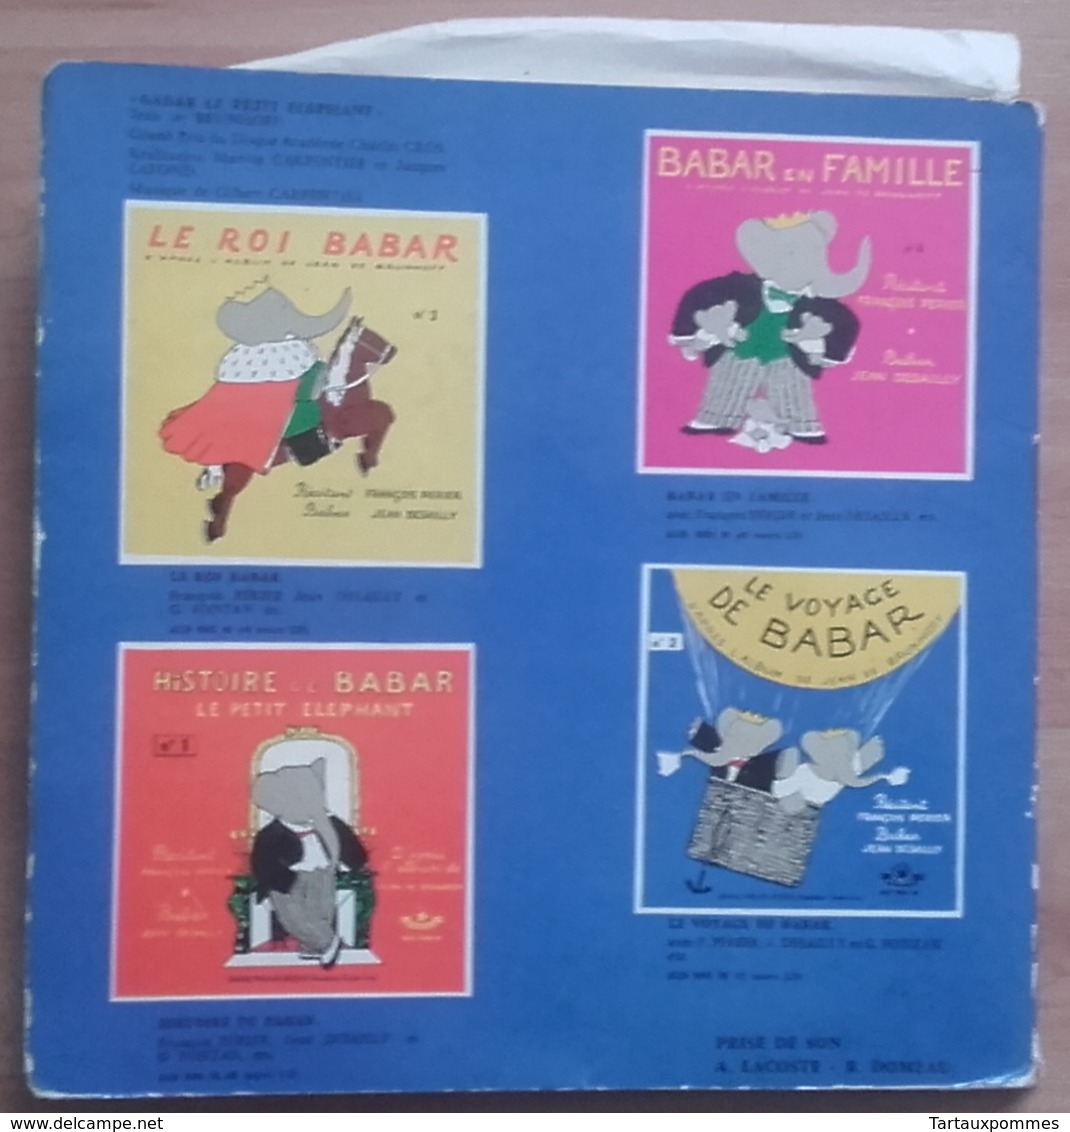 Super 45T - BABAR Et Le Père Noël - Livre-disque - Spezialformate